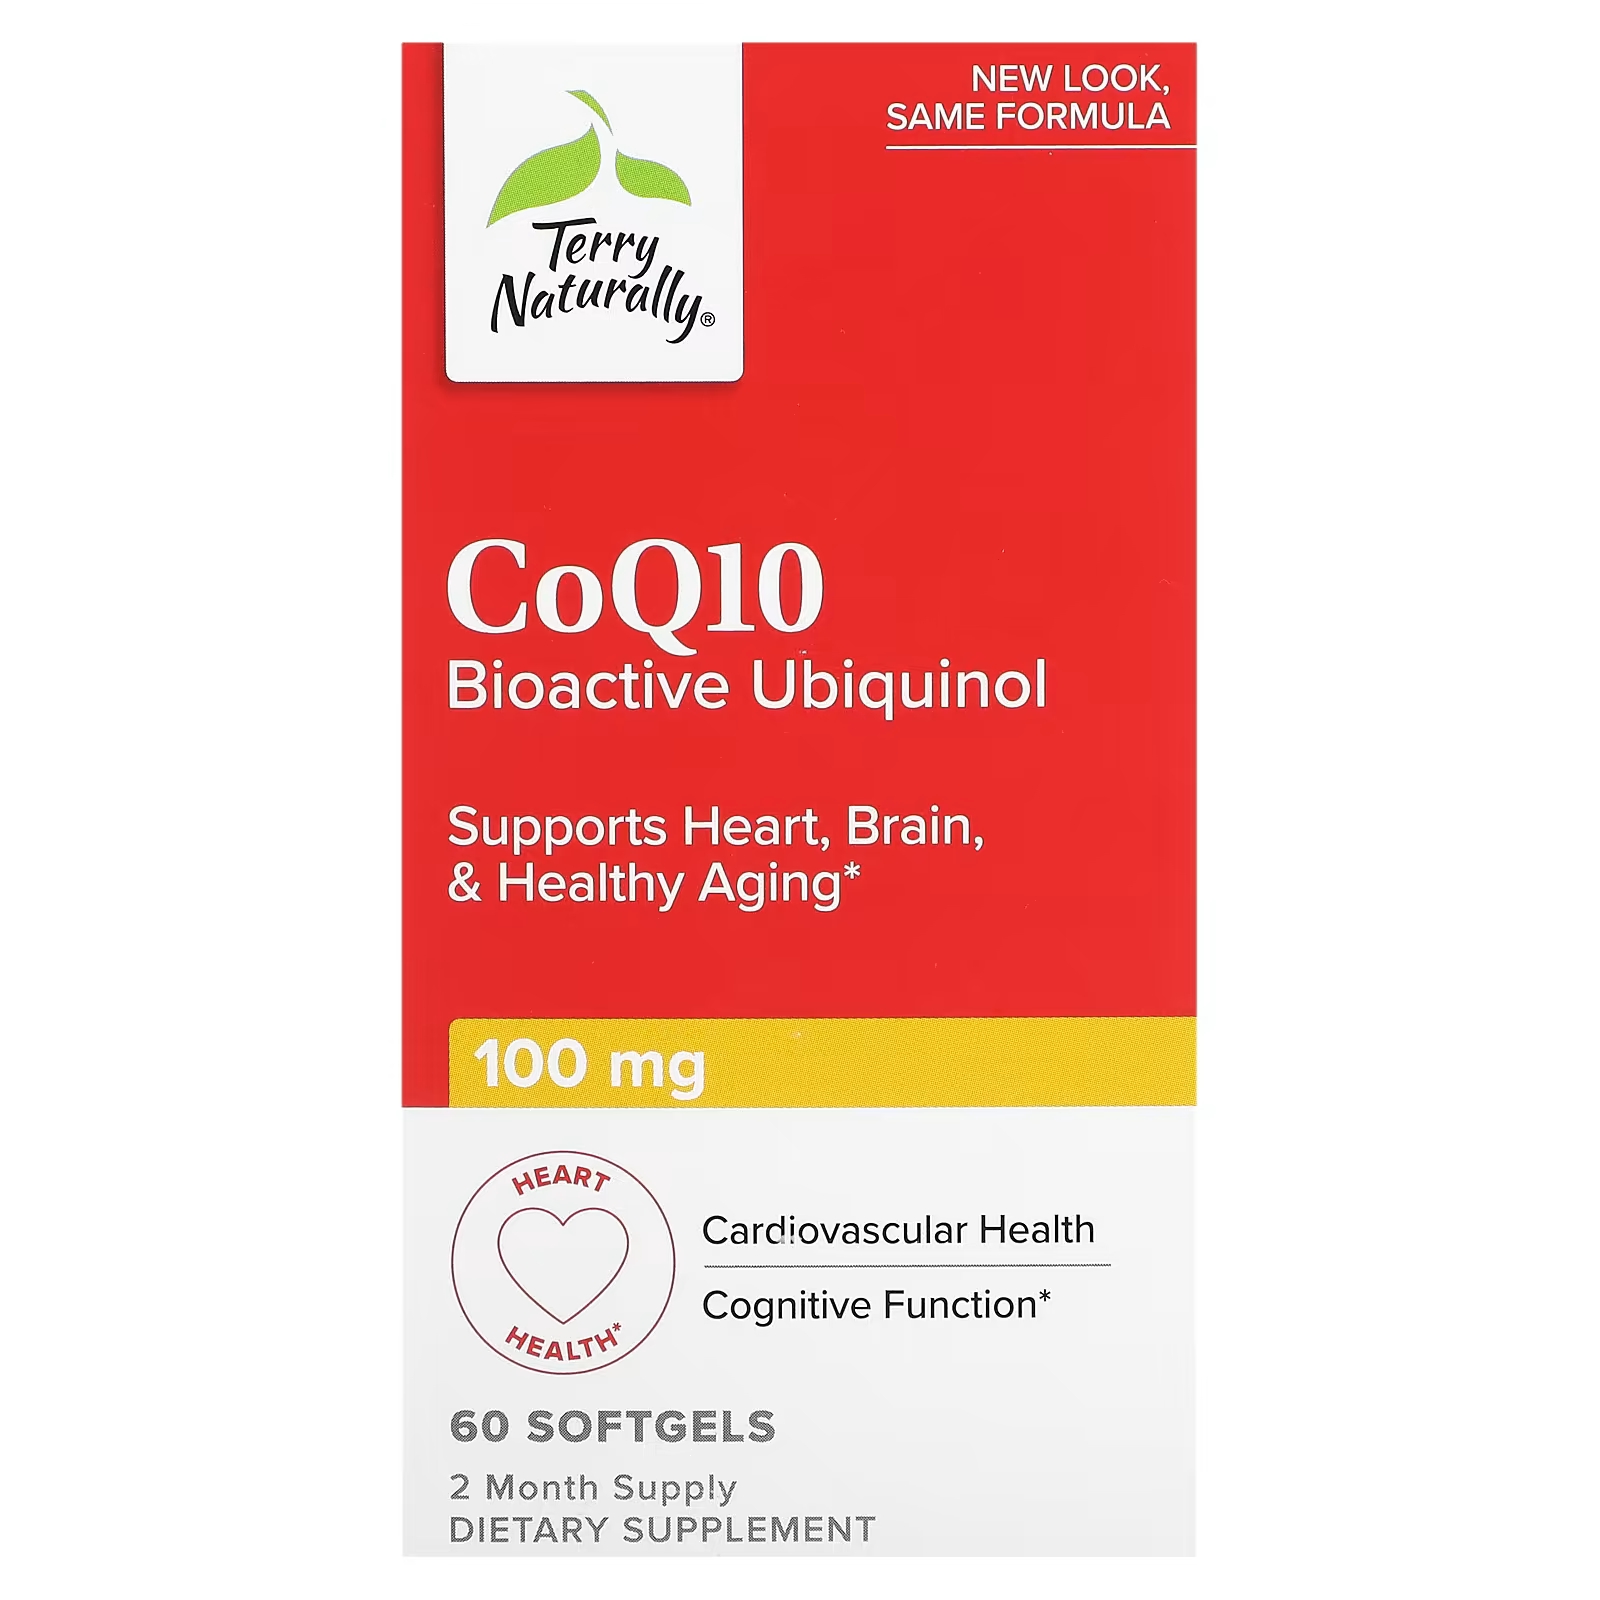 блюда из печени почек сердца легкого Биоактивный убихинол Terry Naturally CoQ10, 60 мягких таблеток